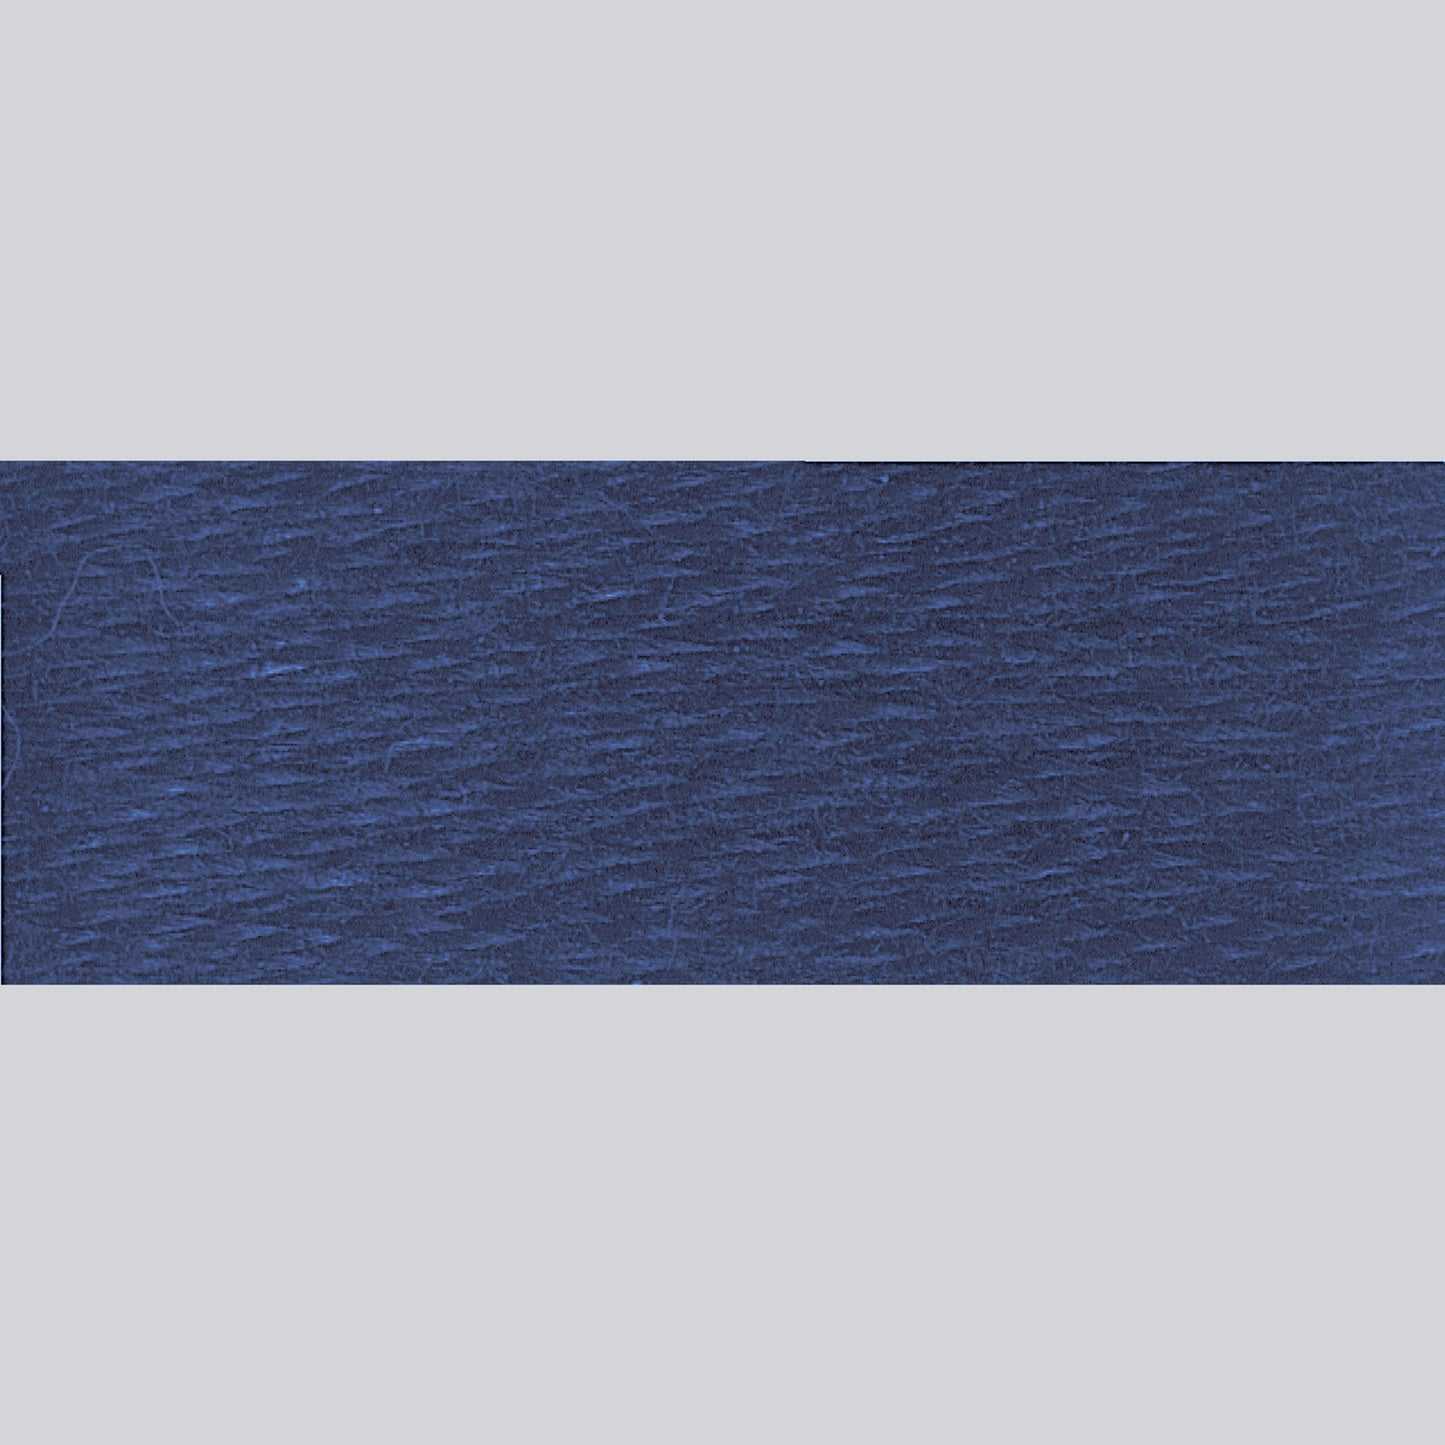 DMC Embroidery Floss - 823 Dark Navy Blue Alternative View #1